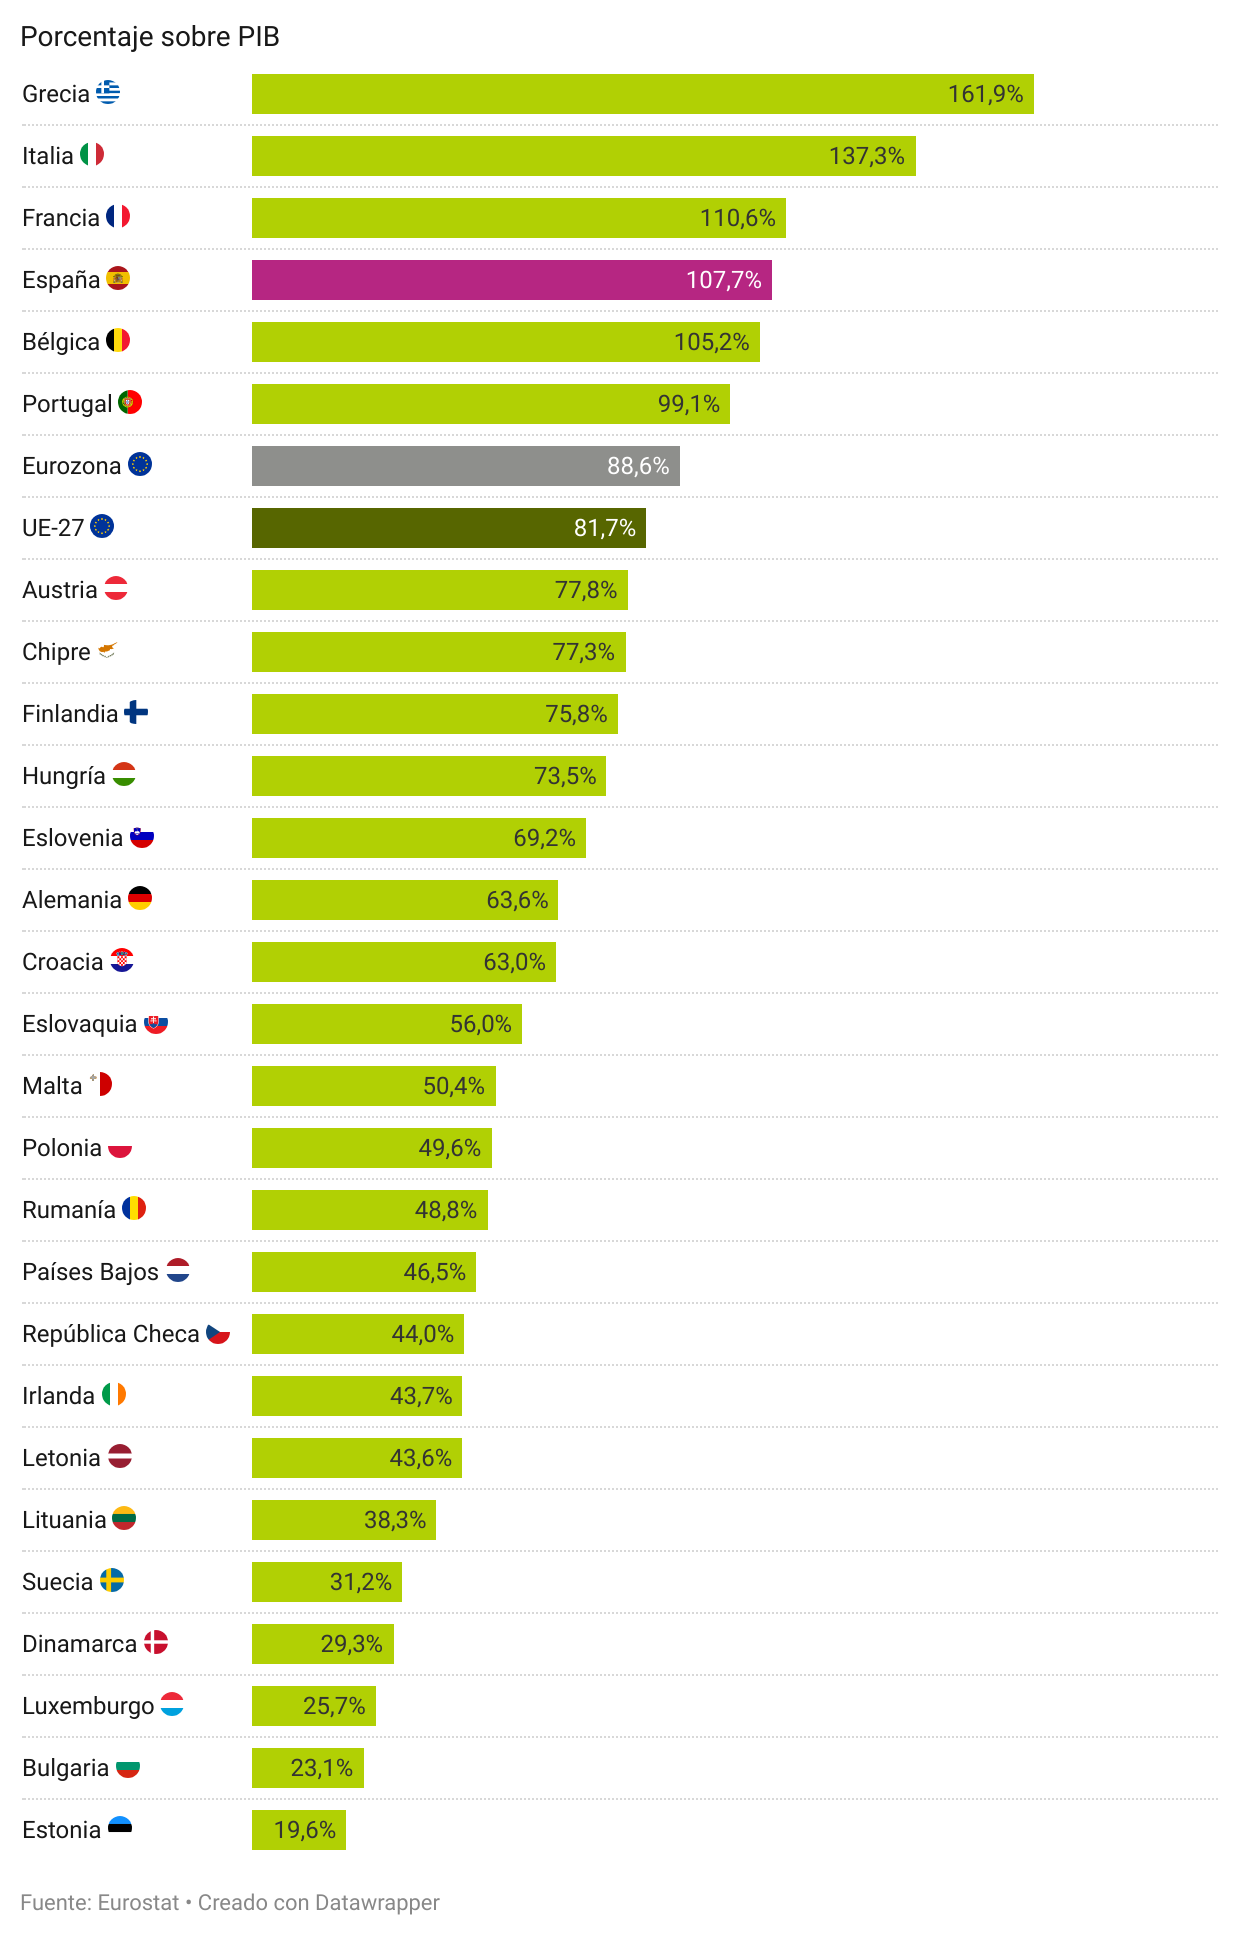 Deuda pública de los países de la UE